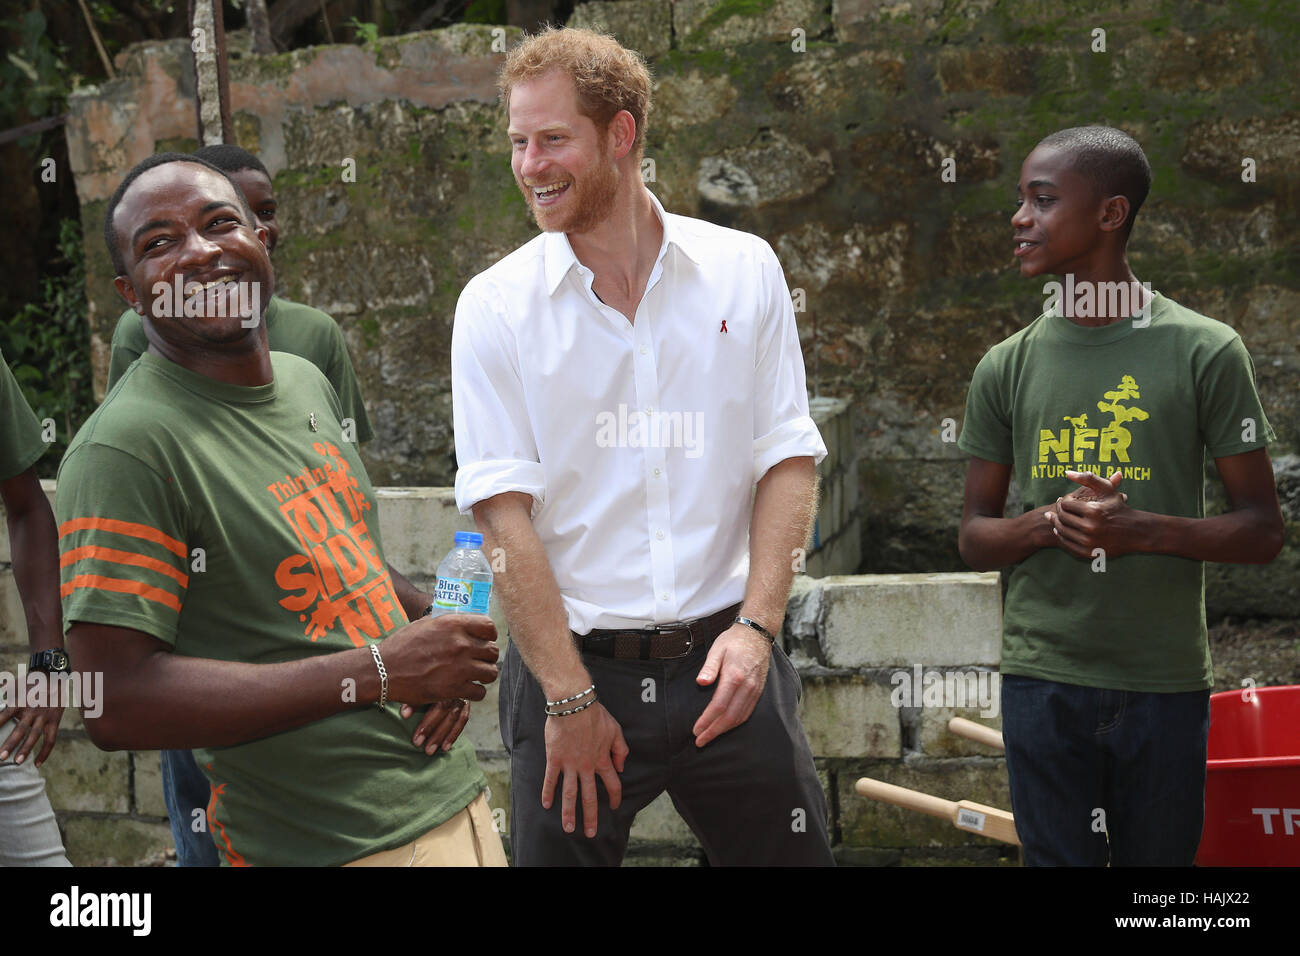 Prinz Harry bei einem Besuch in "Natur Spaß Ranch", die junge Menschen, frei miteinander zu wichtigen Themen zu sprechen erlaubt, einschließlich HIV/AIDS, mit einer positiven Fokus, ihr Leben in die richtige Richtung, während seiner Tour der Karibik zu führen. Stockfoto